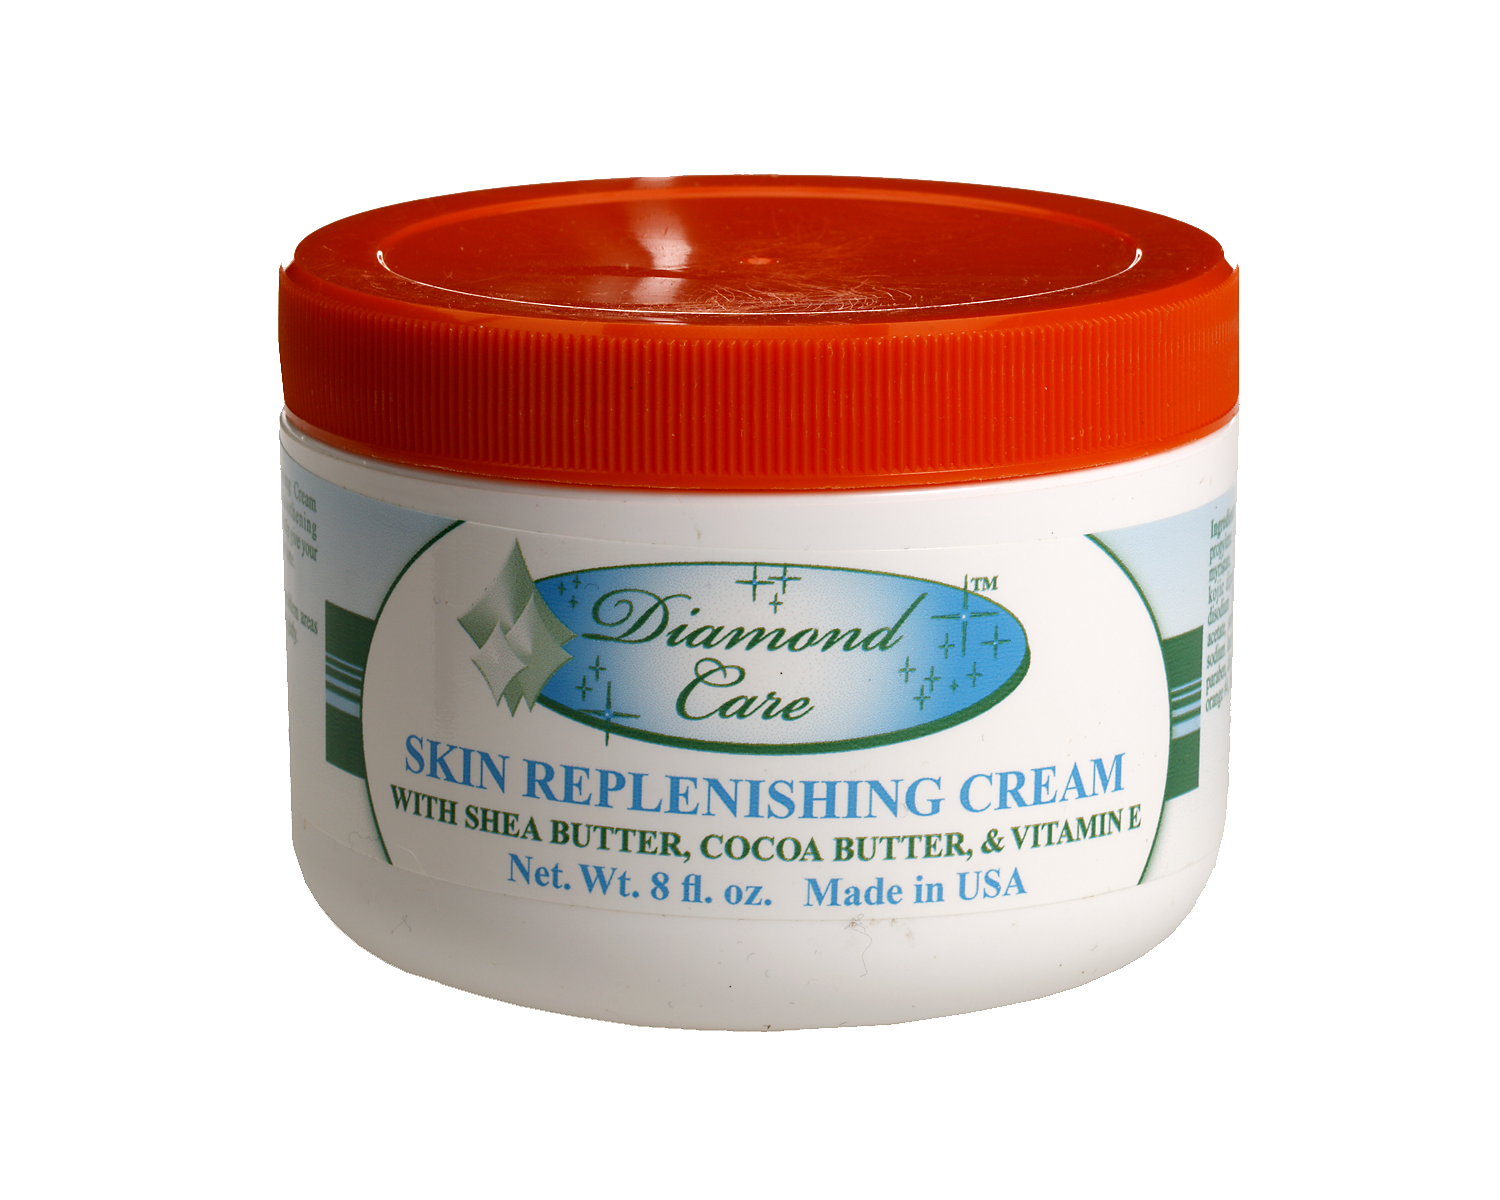 Skin Replenishing Cream